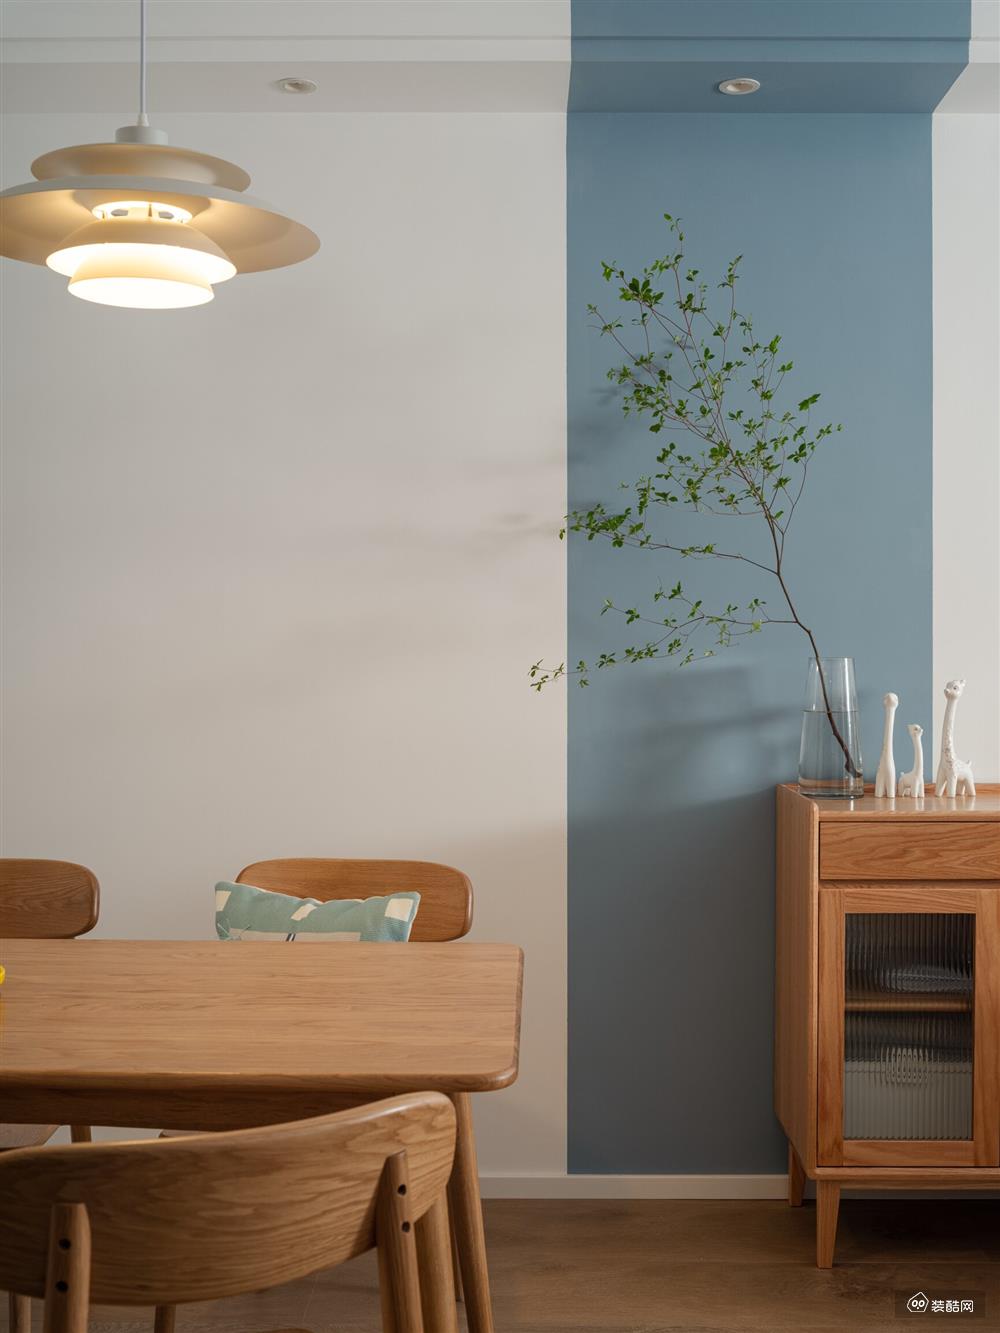 木质斗柜摆上绿植装饰，为家居环境增添生机的同时也让客餐厅之间的界限更加明显，到达了区域划分的效果。